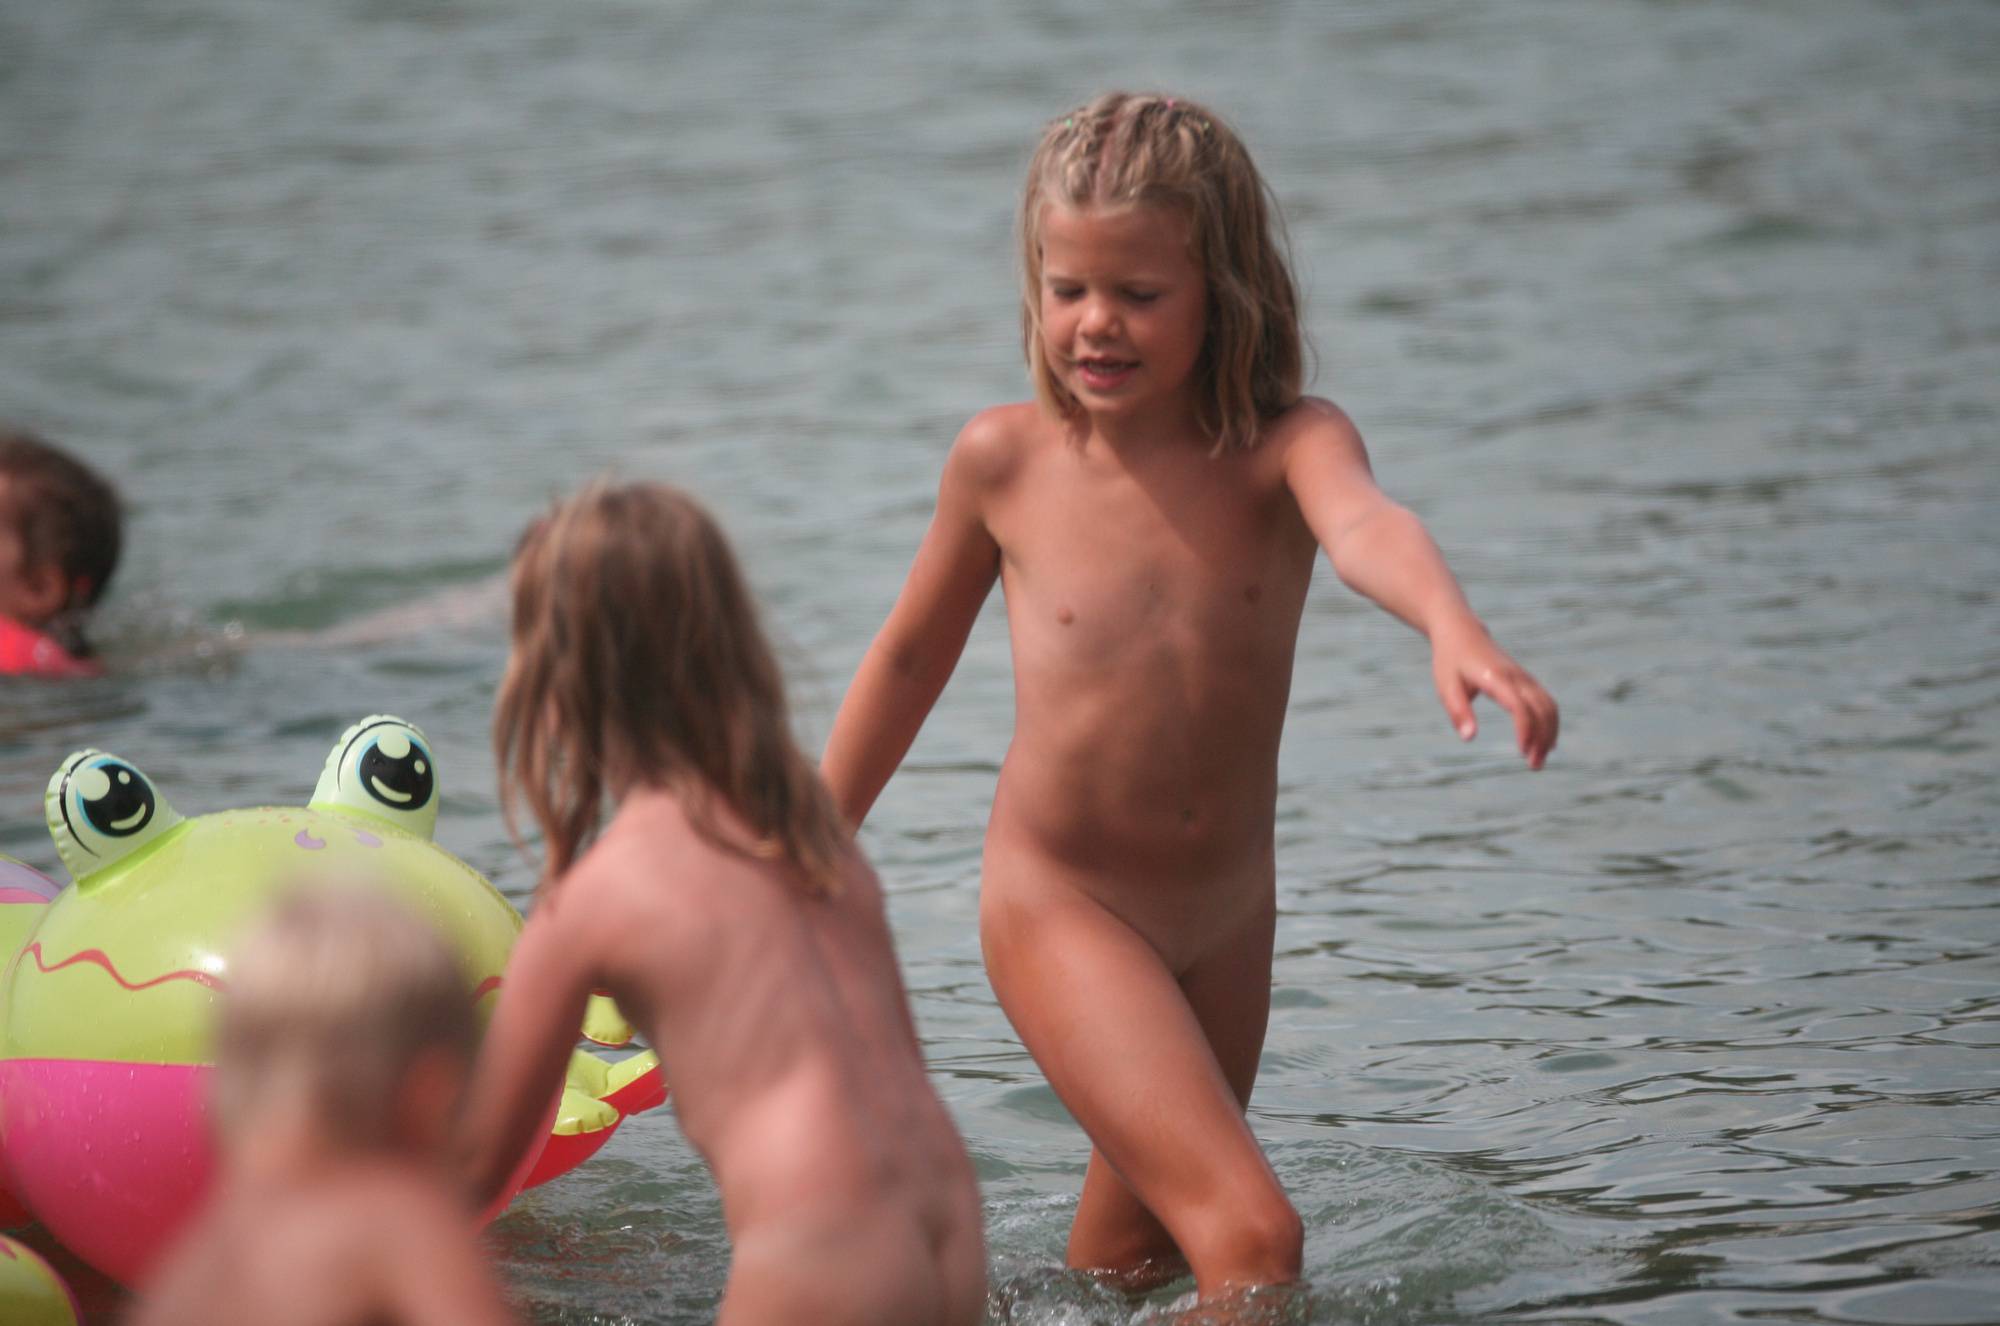 Purenudism Photos Nudist Kids On Floatables - 2